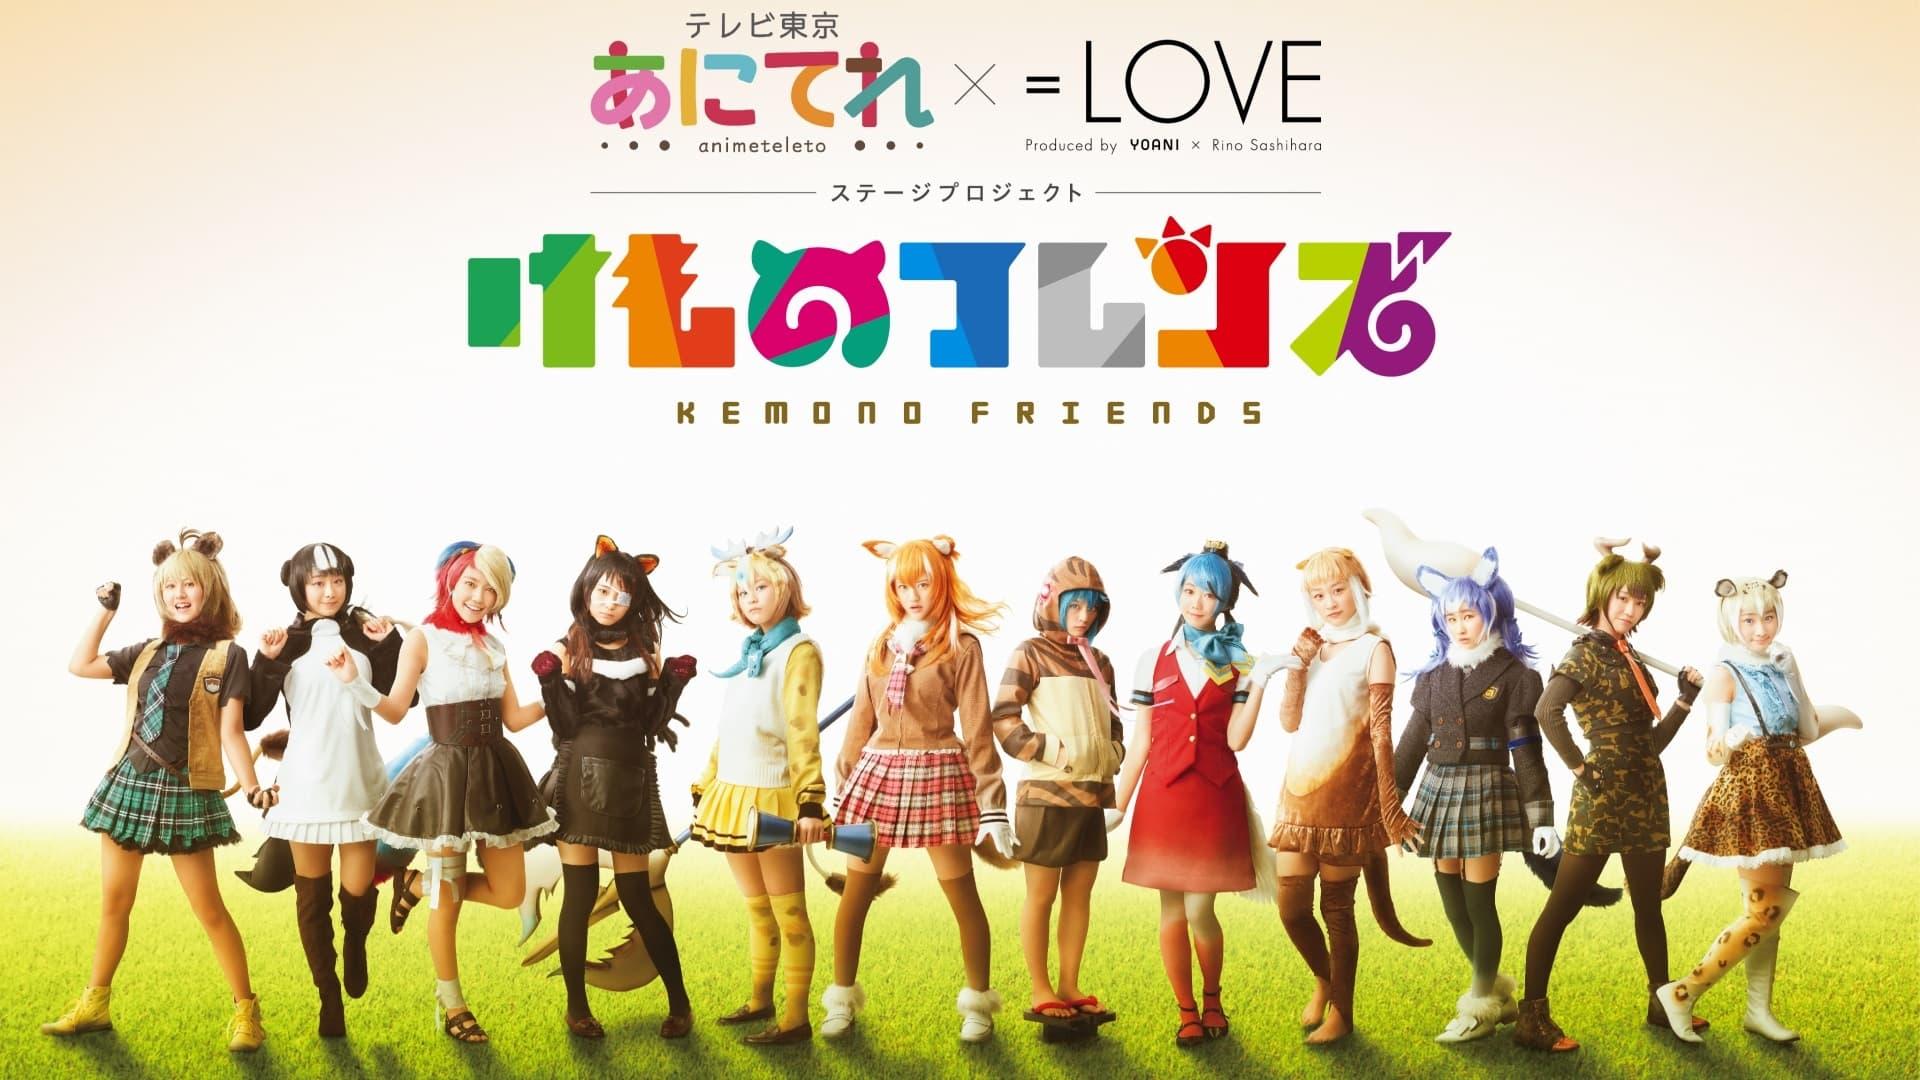 Anitele×=LOVE Stage Project "Kemono Friends" backdrop